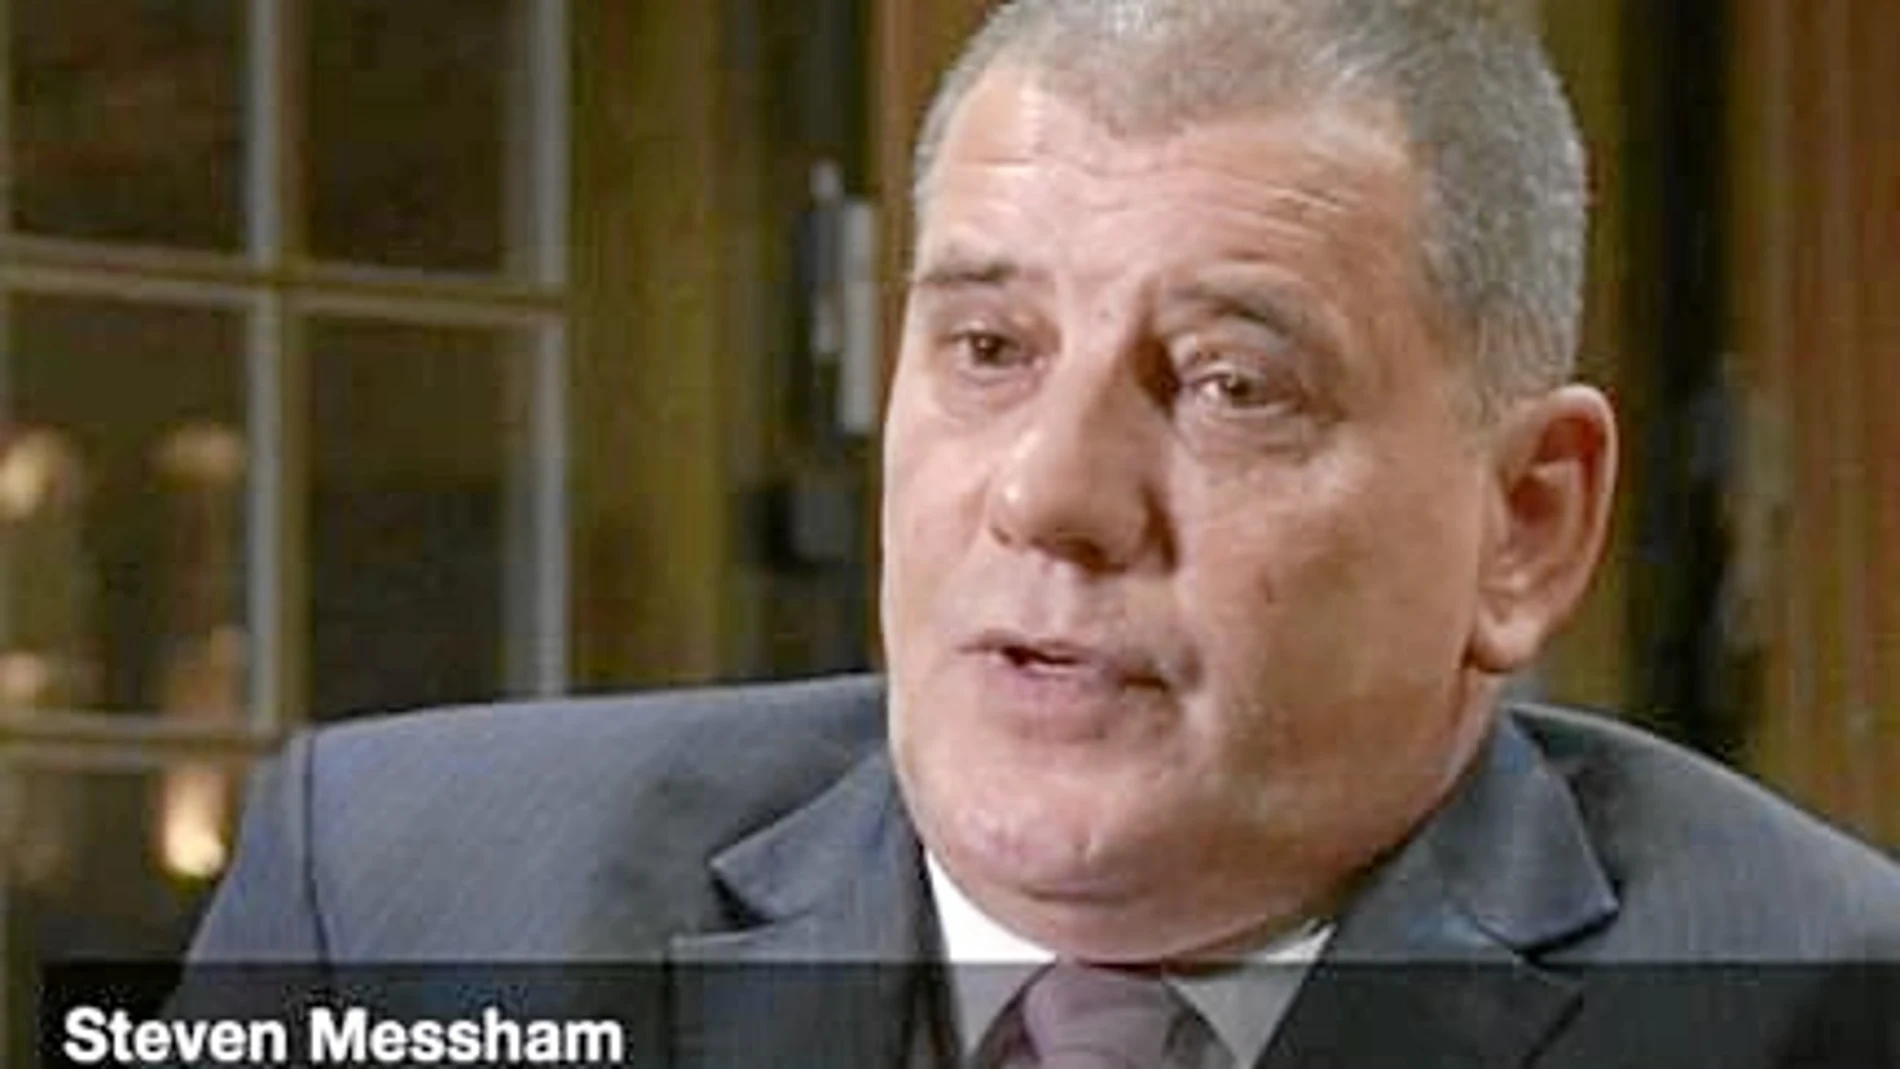 Steven Messham (en la imagen, durante su intervención en el programa de la BBC) fue víctima de abusos sexuales cuando era menor y ayer pidió disculpas por haber acusado a la persona equivocada